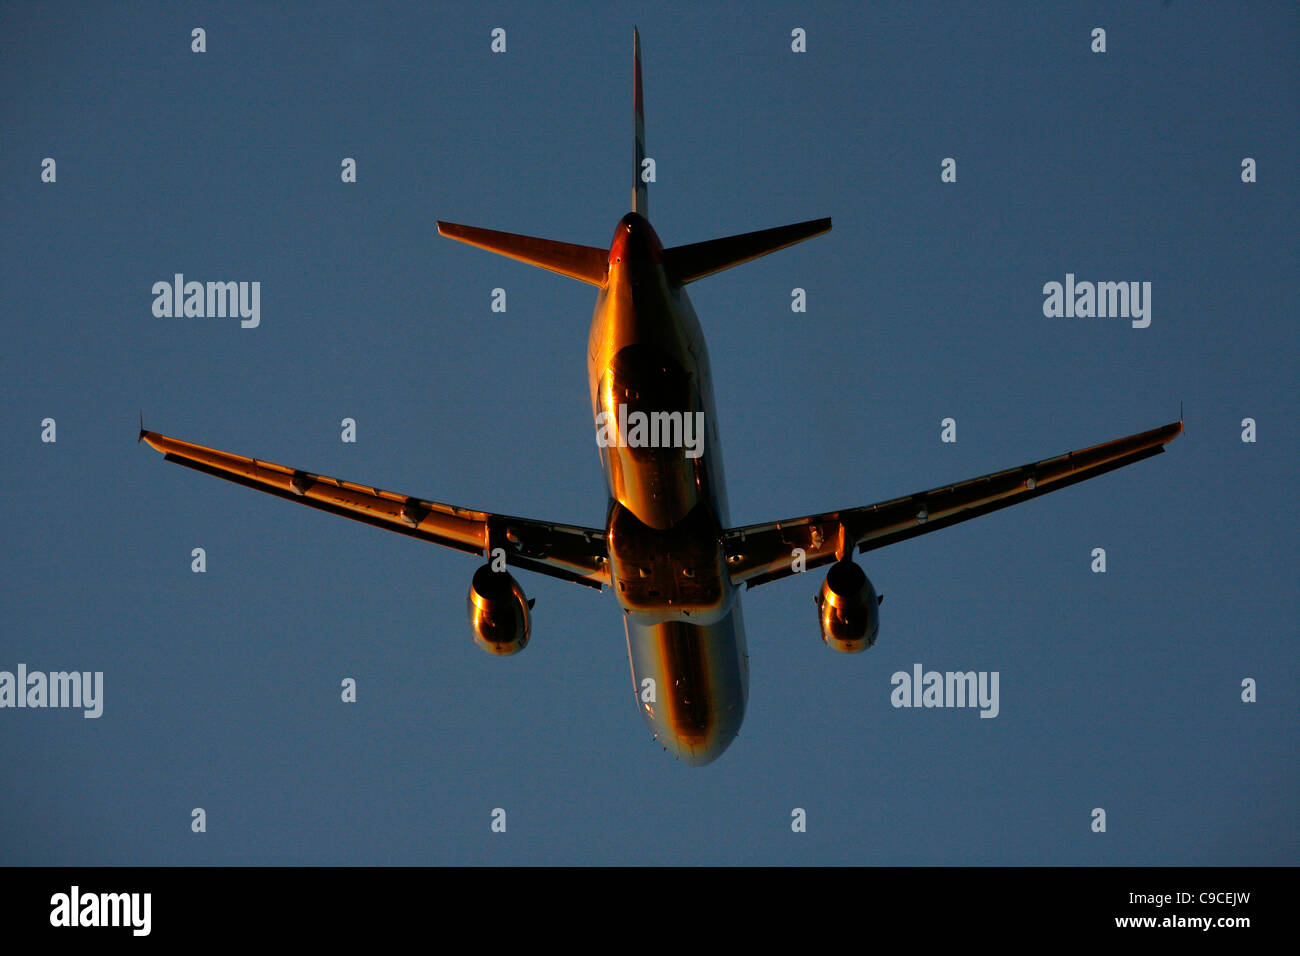 Un passeggero jet decolla dall'aeroporto Gatwick di Londra. Foto di James Boardman Foto Stock